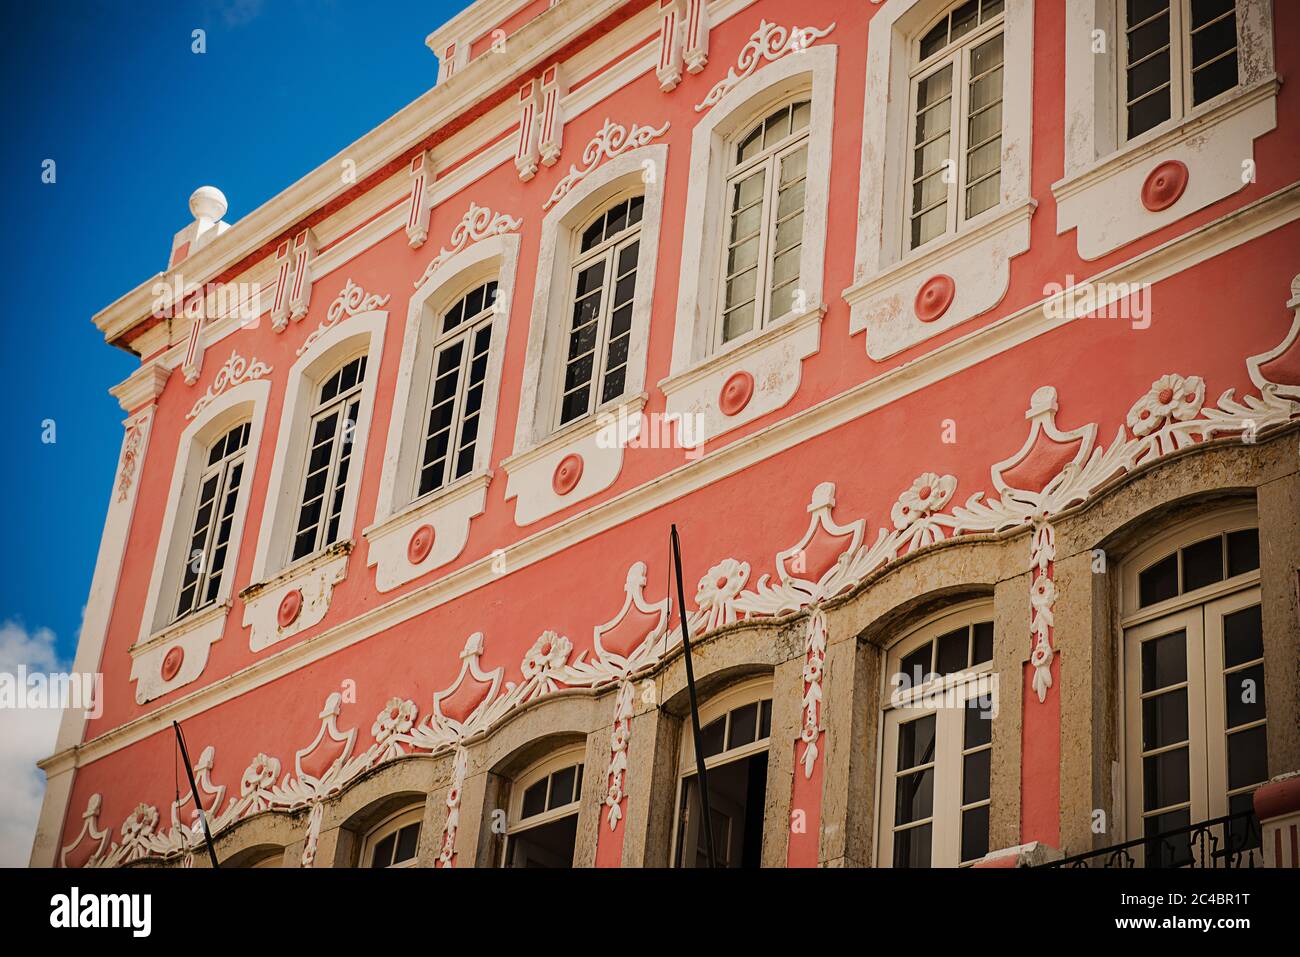 Architecture coloniale espagnole colorée dans la vieille ville de Salvador, Brésil, Bahia, Amérique du Sud Banque D'Images